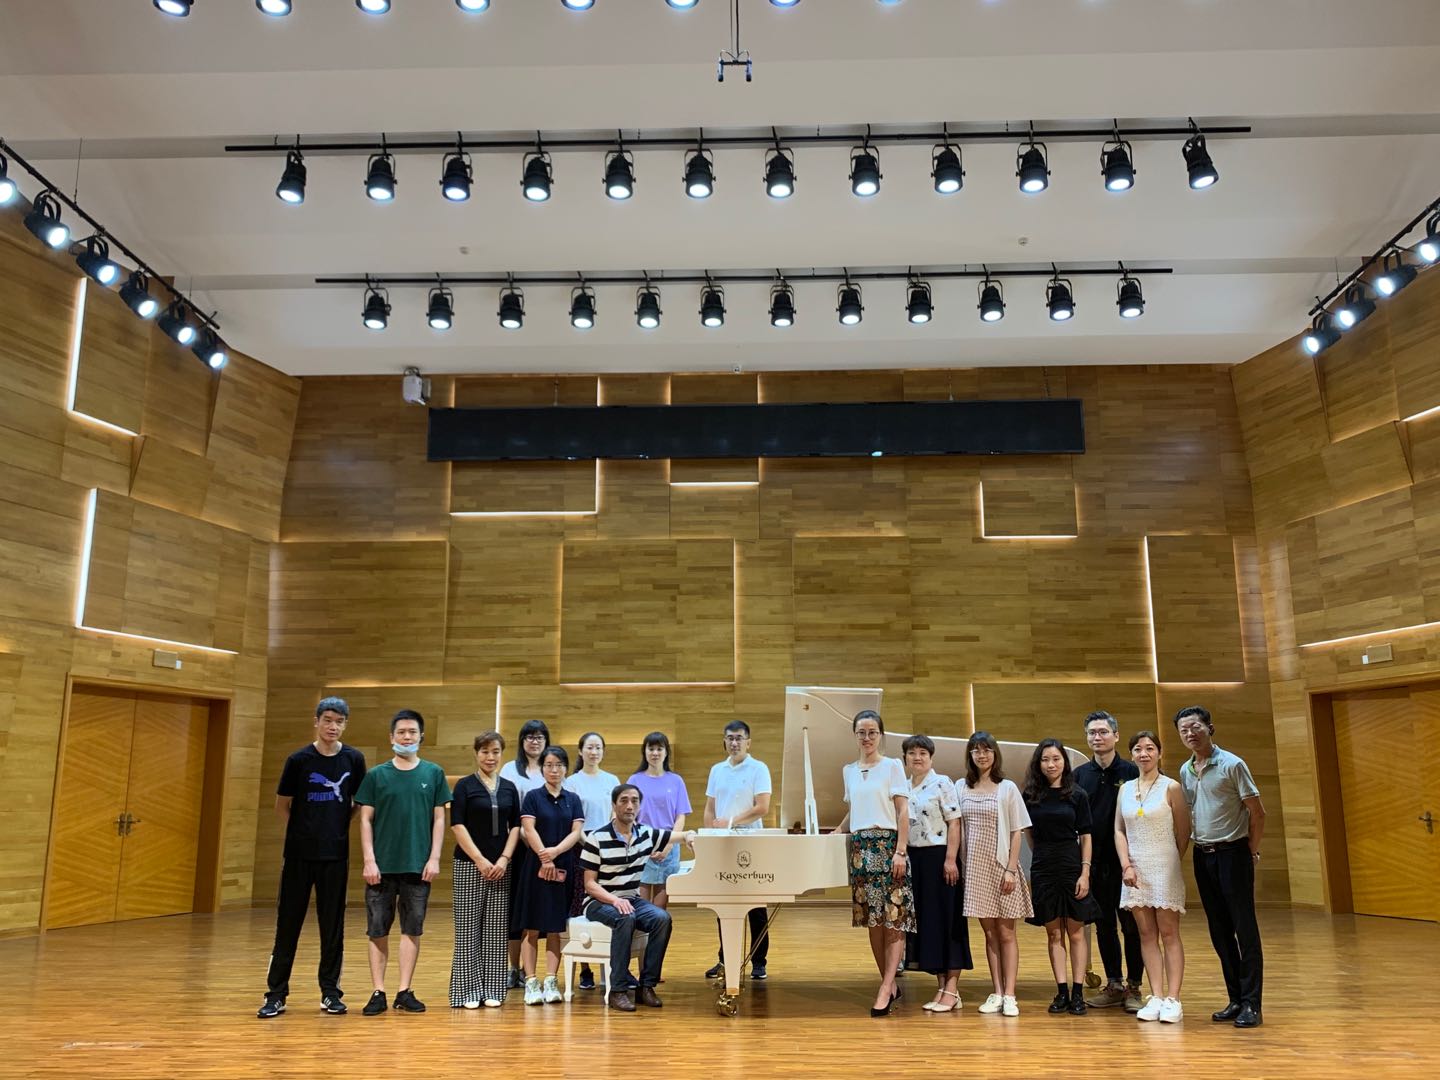 帶領濱城著名鋼琴老師們參訪廣州珠江鋼琴集團